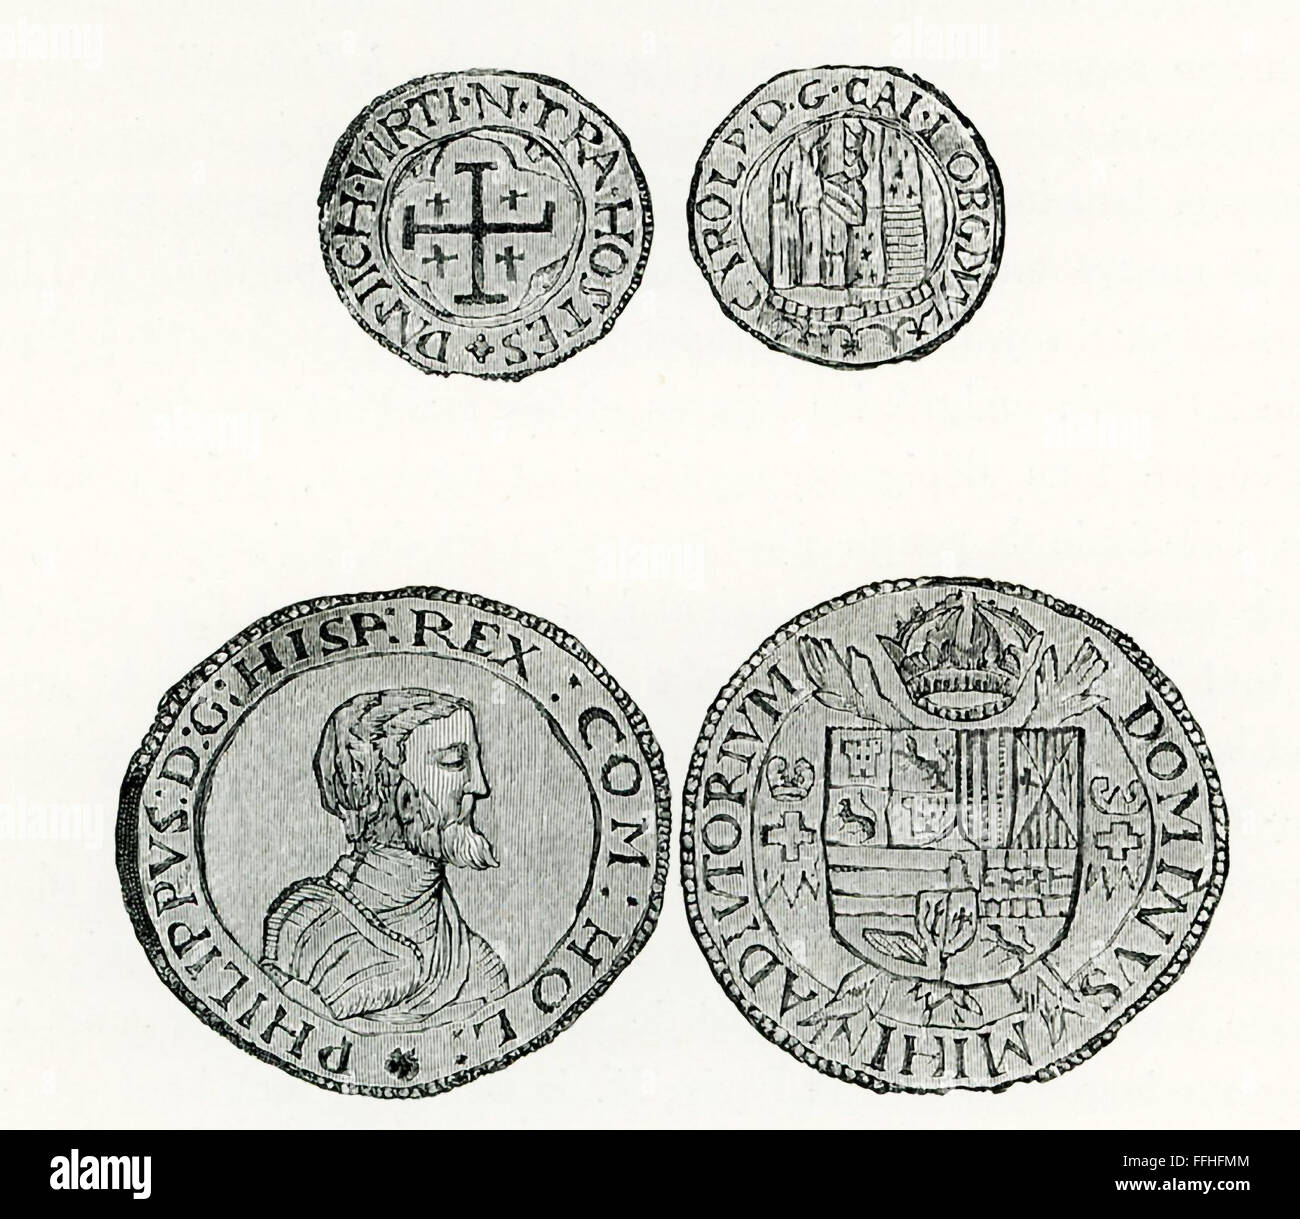 Montré ici sont fin des années 1800, des gravures d'doubloons espagnol. Le portrait ici, c'est Philippe II d'Espagne. Il a régné sur l'Espagne de 1556 à 1598 et au Portugal de 1581 à 1598. Comme l'époux de la Reine Marie d'Angleterre, il était roi d'Angleterre et d'Irlande 1544-1588. Philippe a été le dirigeant responsable de l'Armada espagnole. Or monétaire ont été Doubloons pièces frappées en Espagne, Mexique, Pérou, et Nueva Grande. Banque D'Images